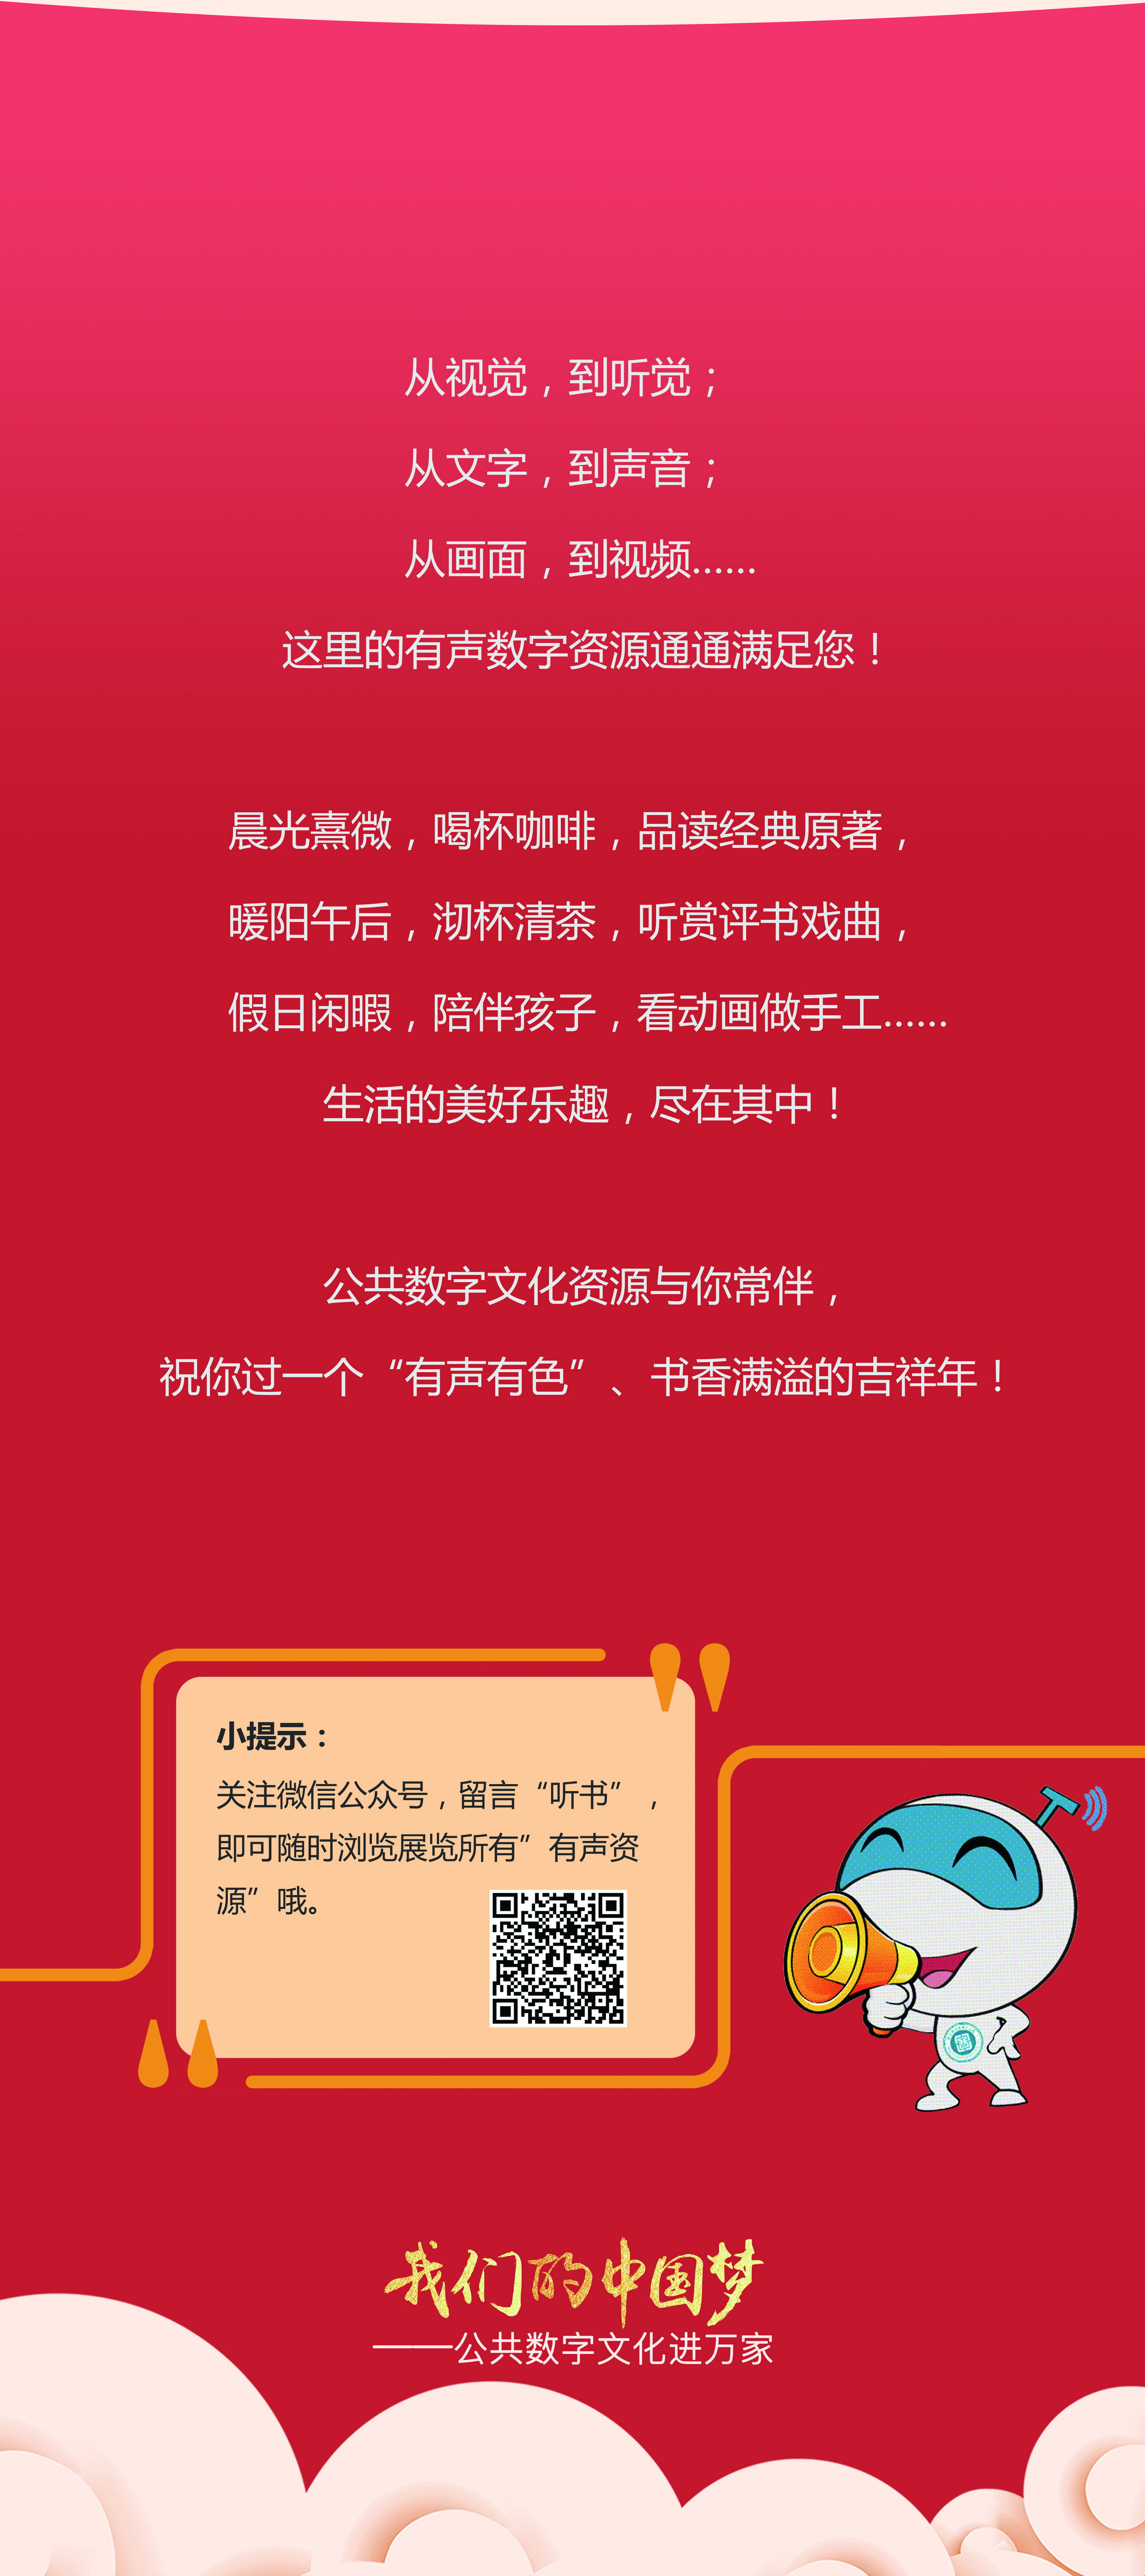 我们的中国梦——公共数字文化进万家活动线下主题展览_图3